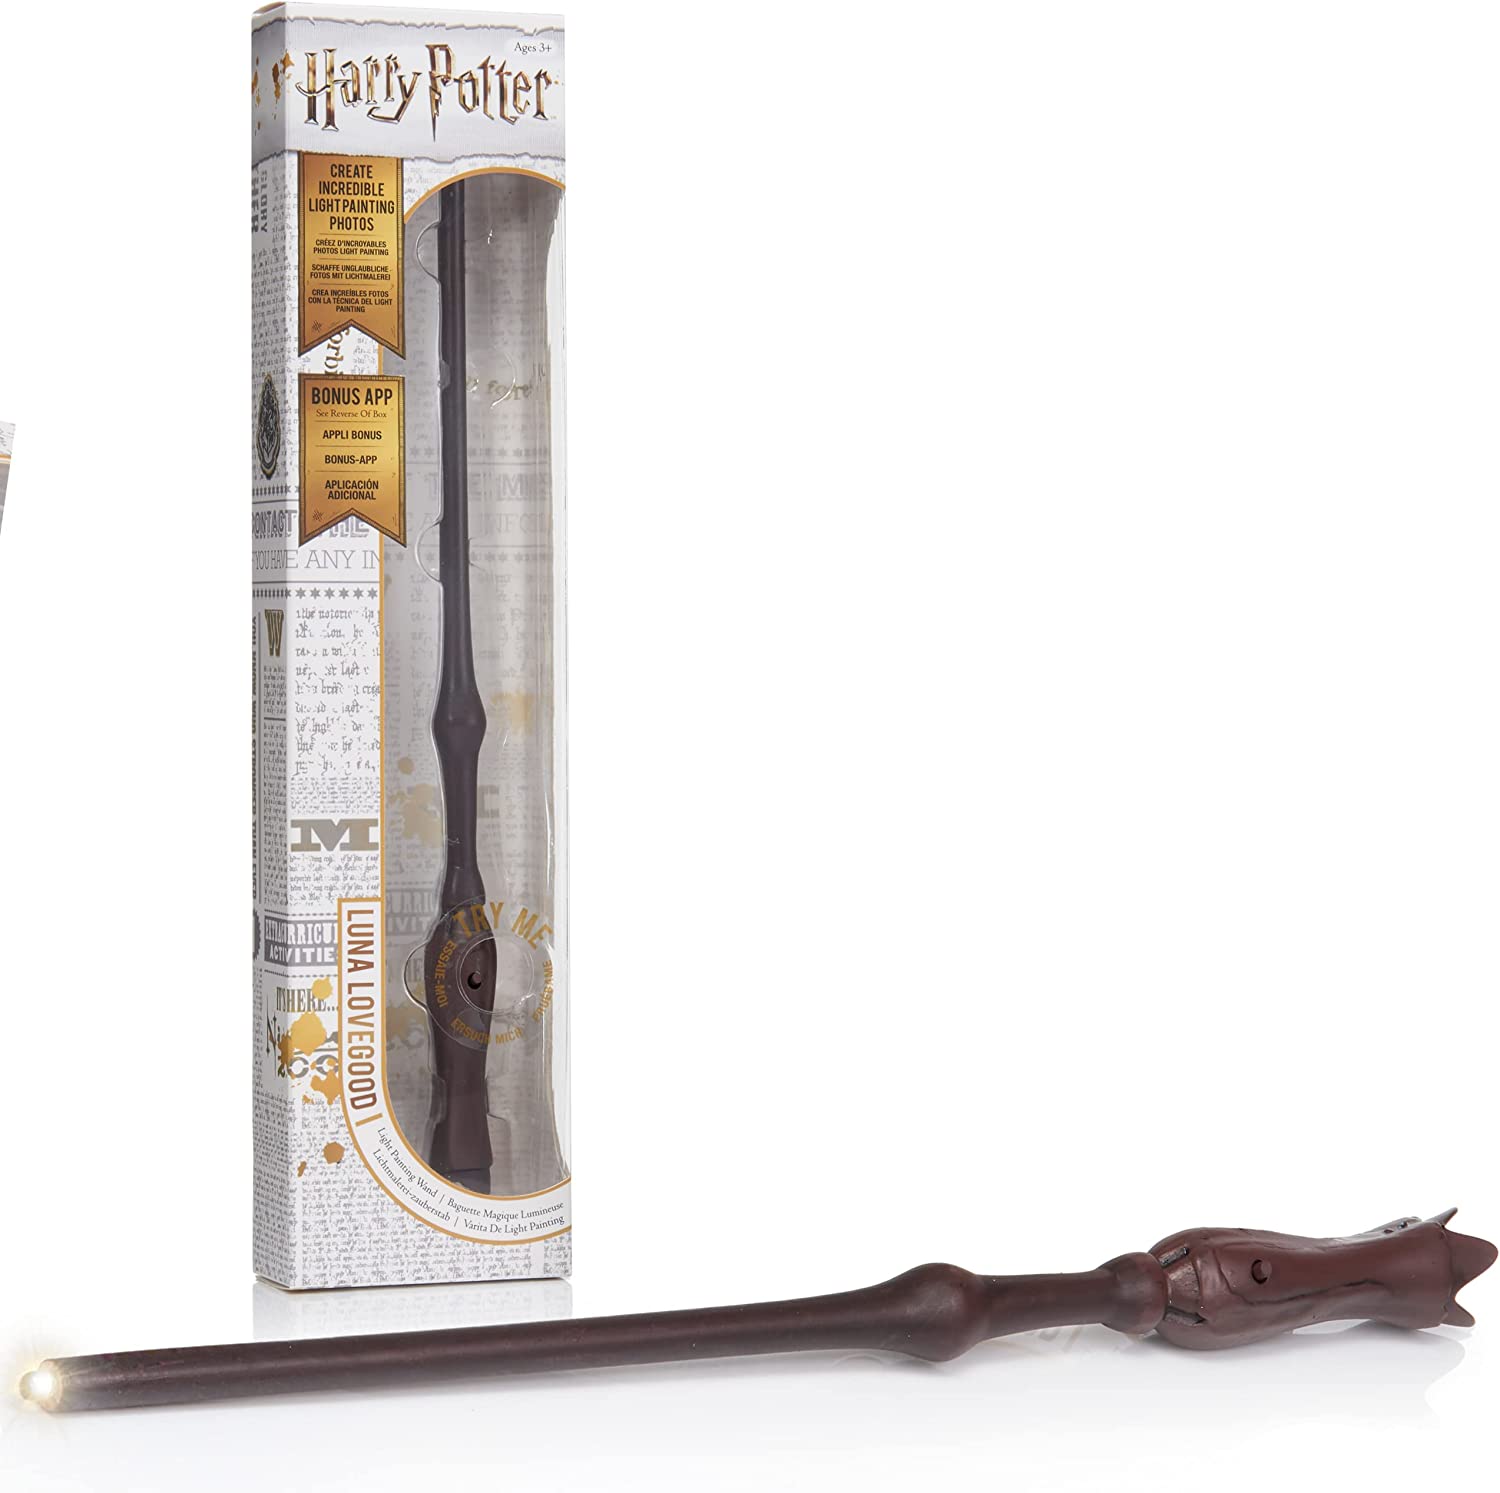 Игрушка Wow! Stuff Harry Potter: Волшебная палочка Полумны Лавгуд (рисует светом) (34 см)